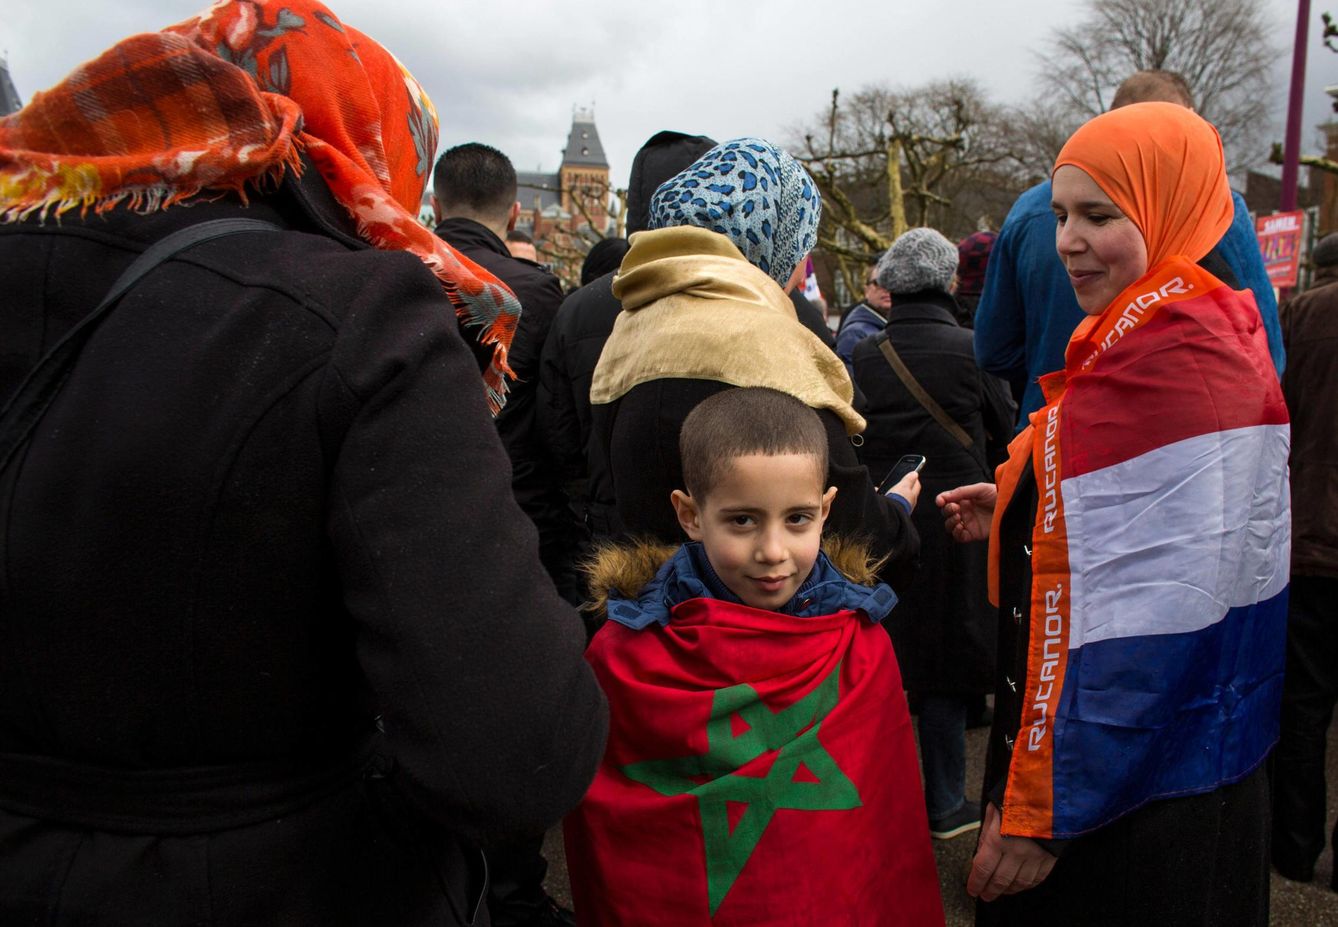 Los holandeses de origen marroquí Nadia y Anouar, nacidos en Amsterdam, se manifiestan contra Geert Wilders en marzo de 2014 (Reuters)